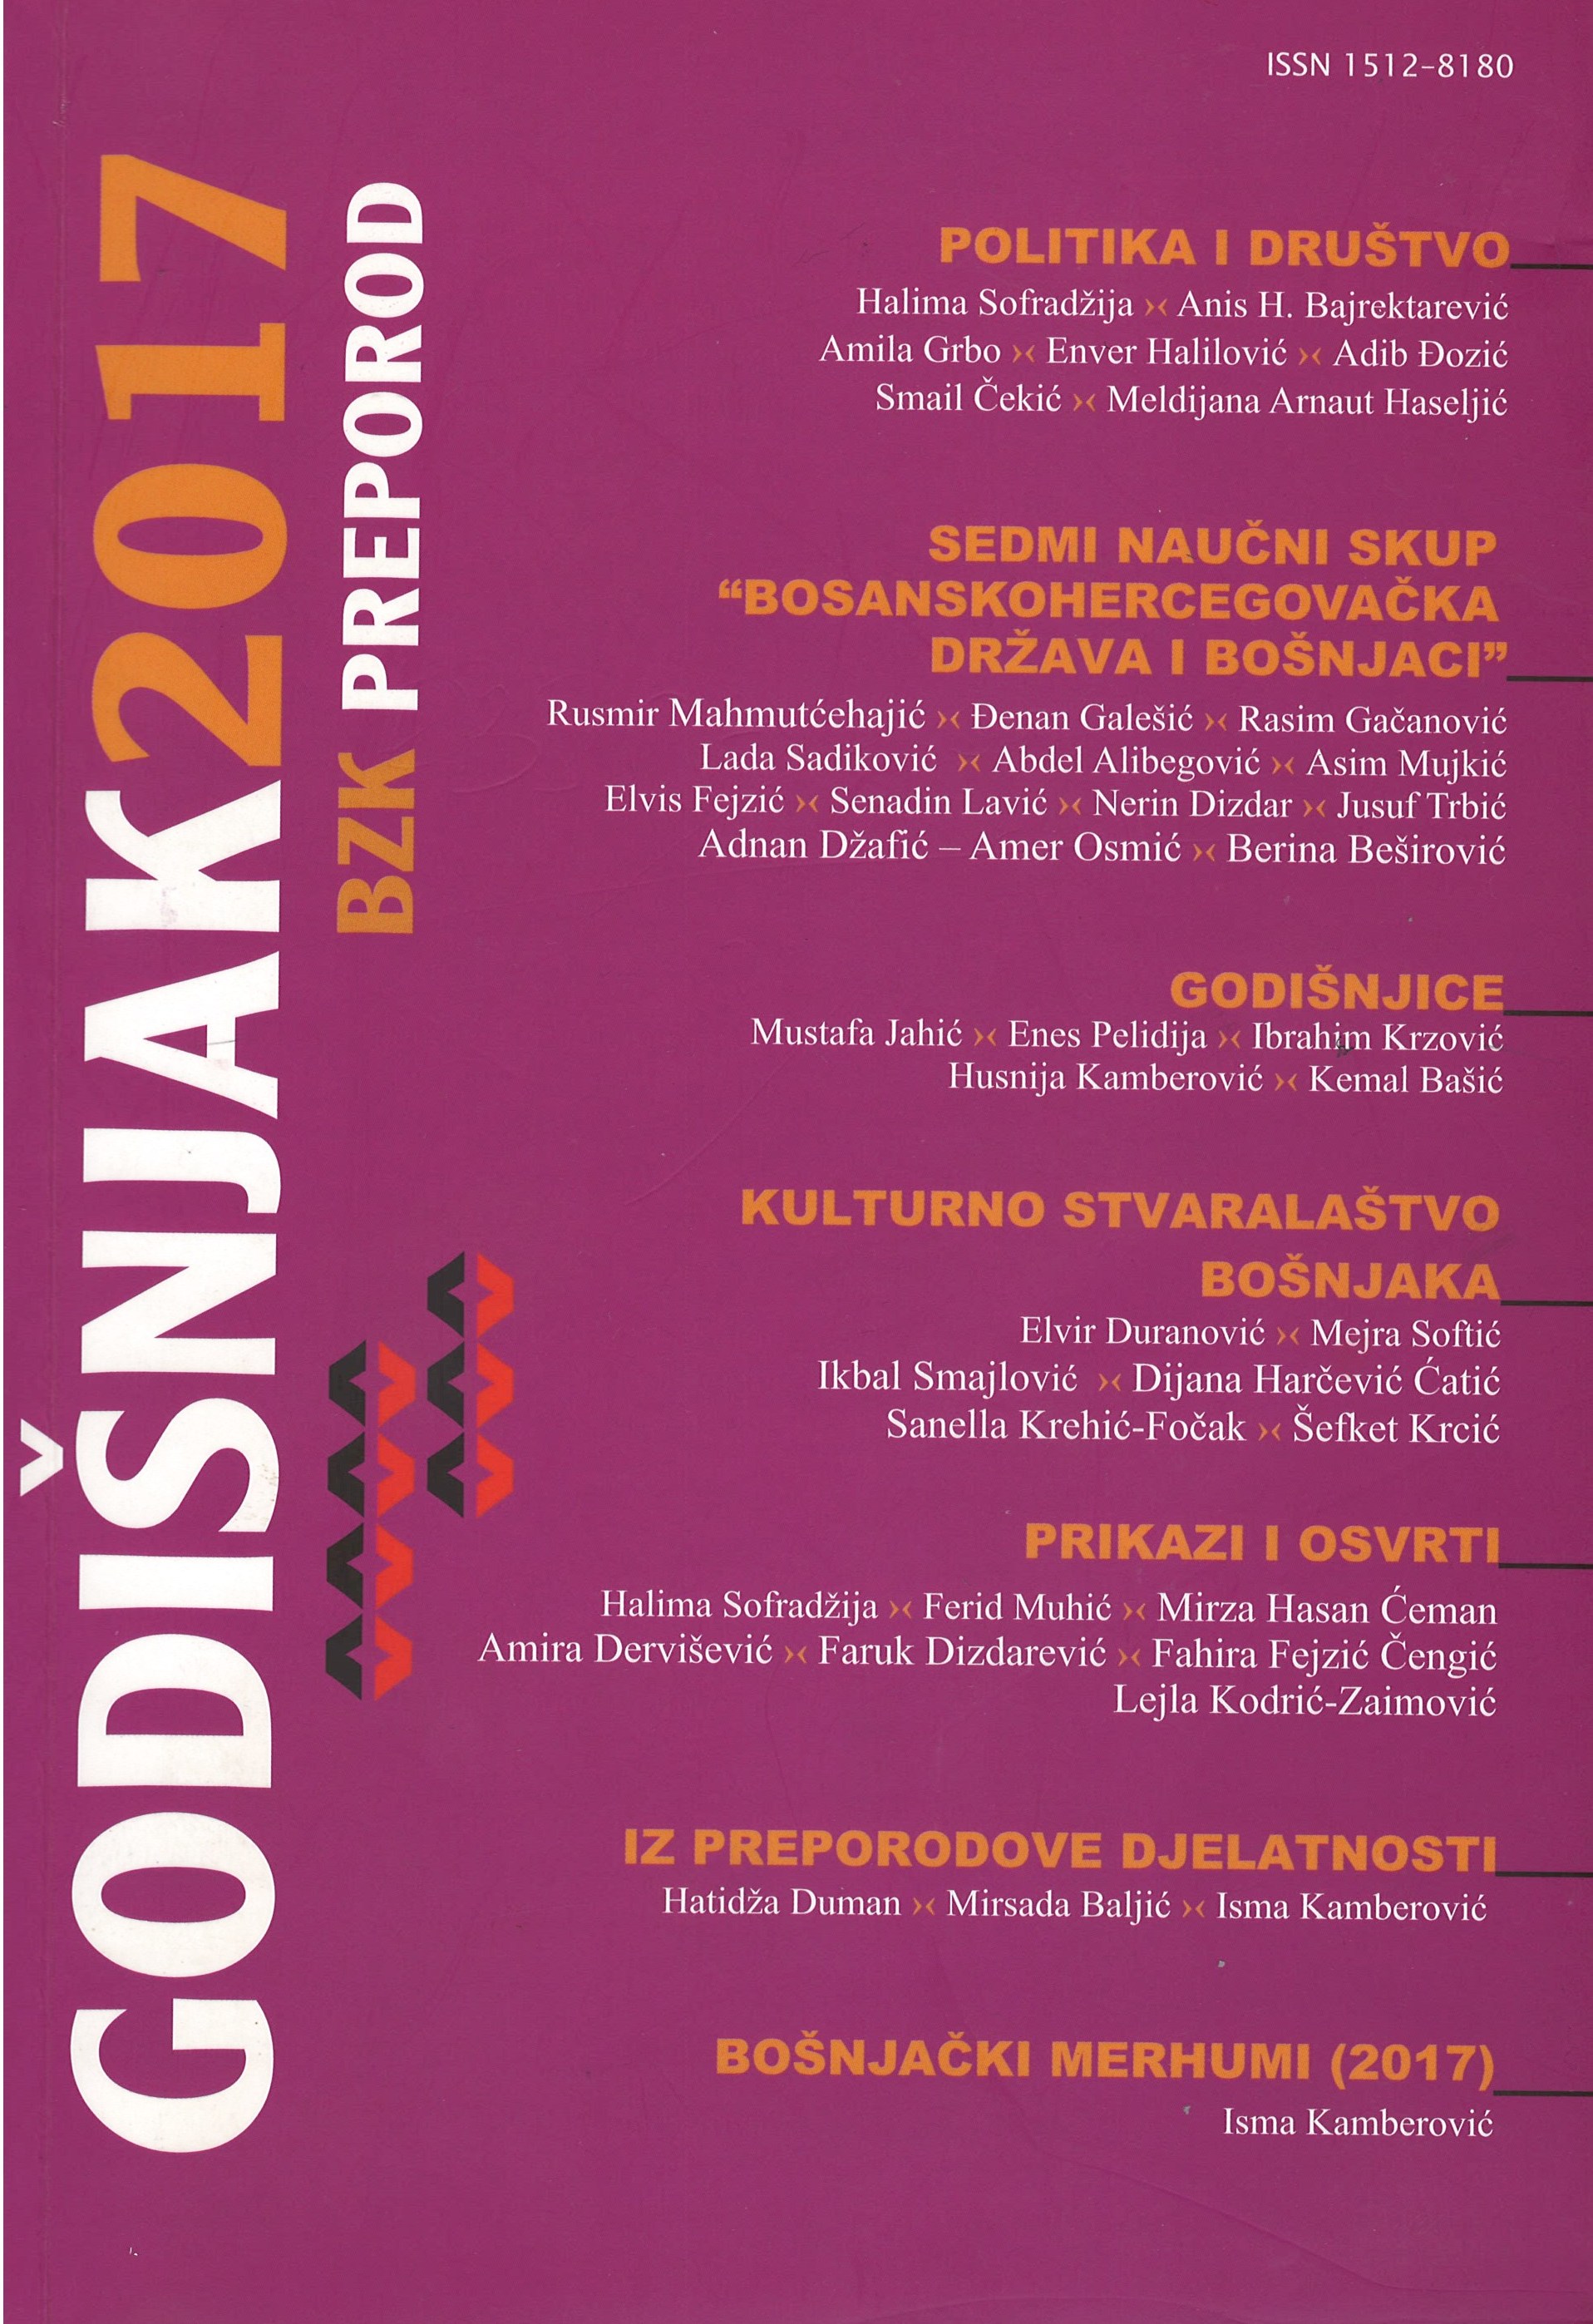 Aktivnosti općinskih društava BZK “Preporod“ u 2017. godine